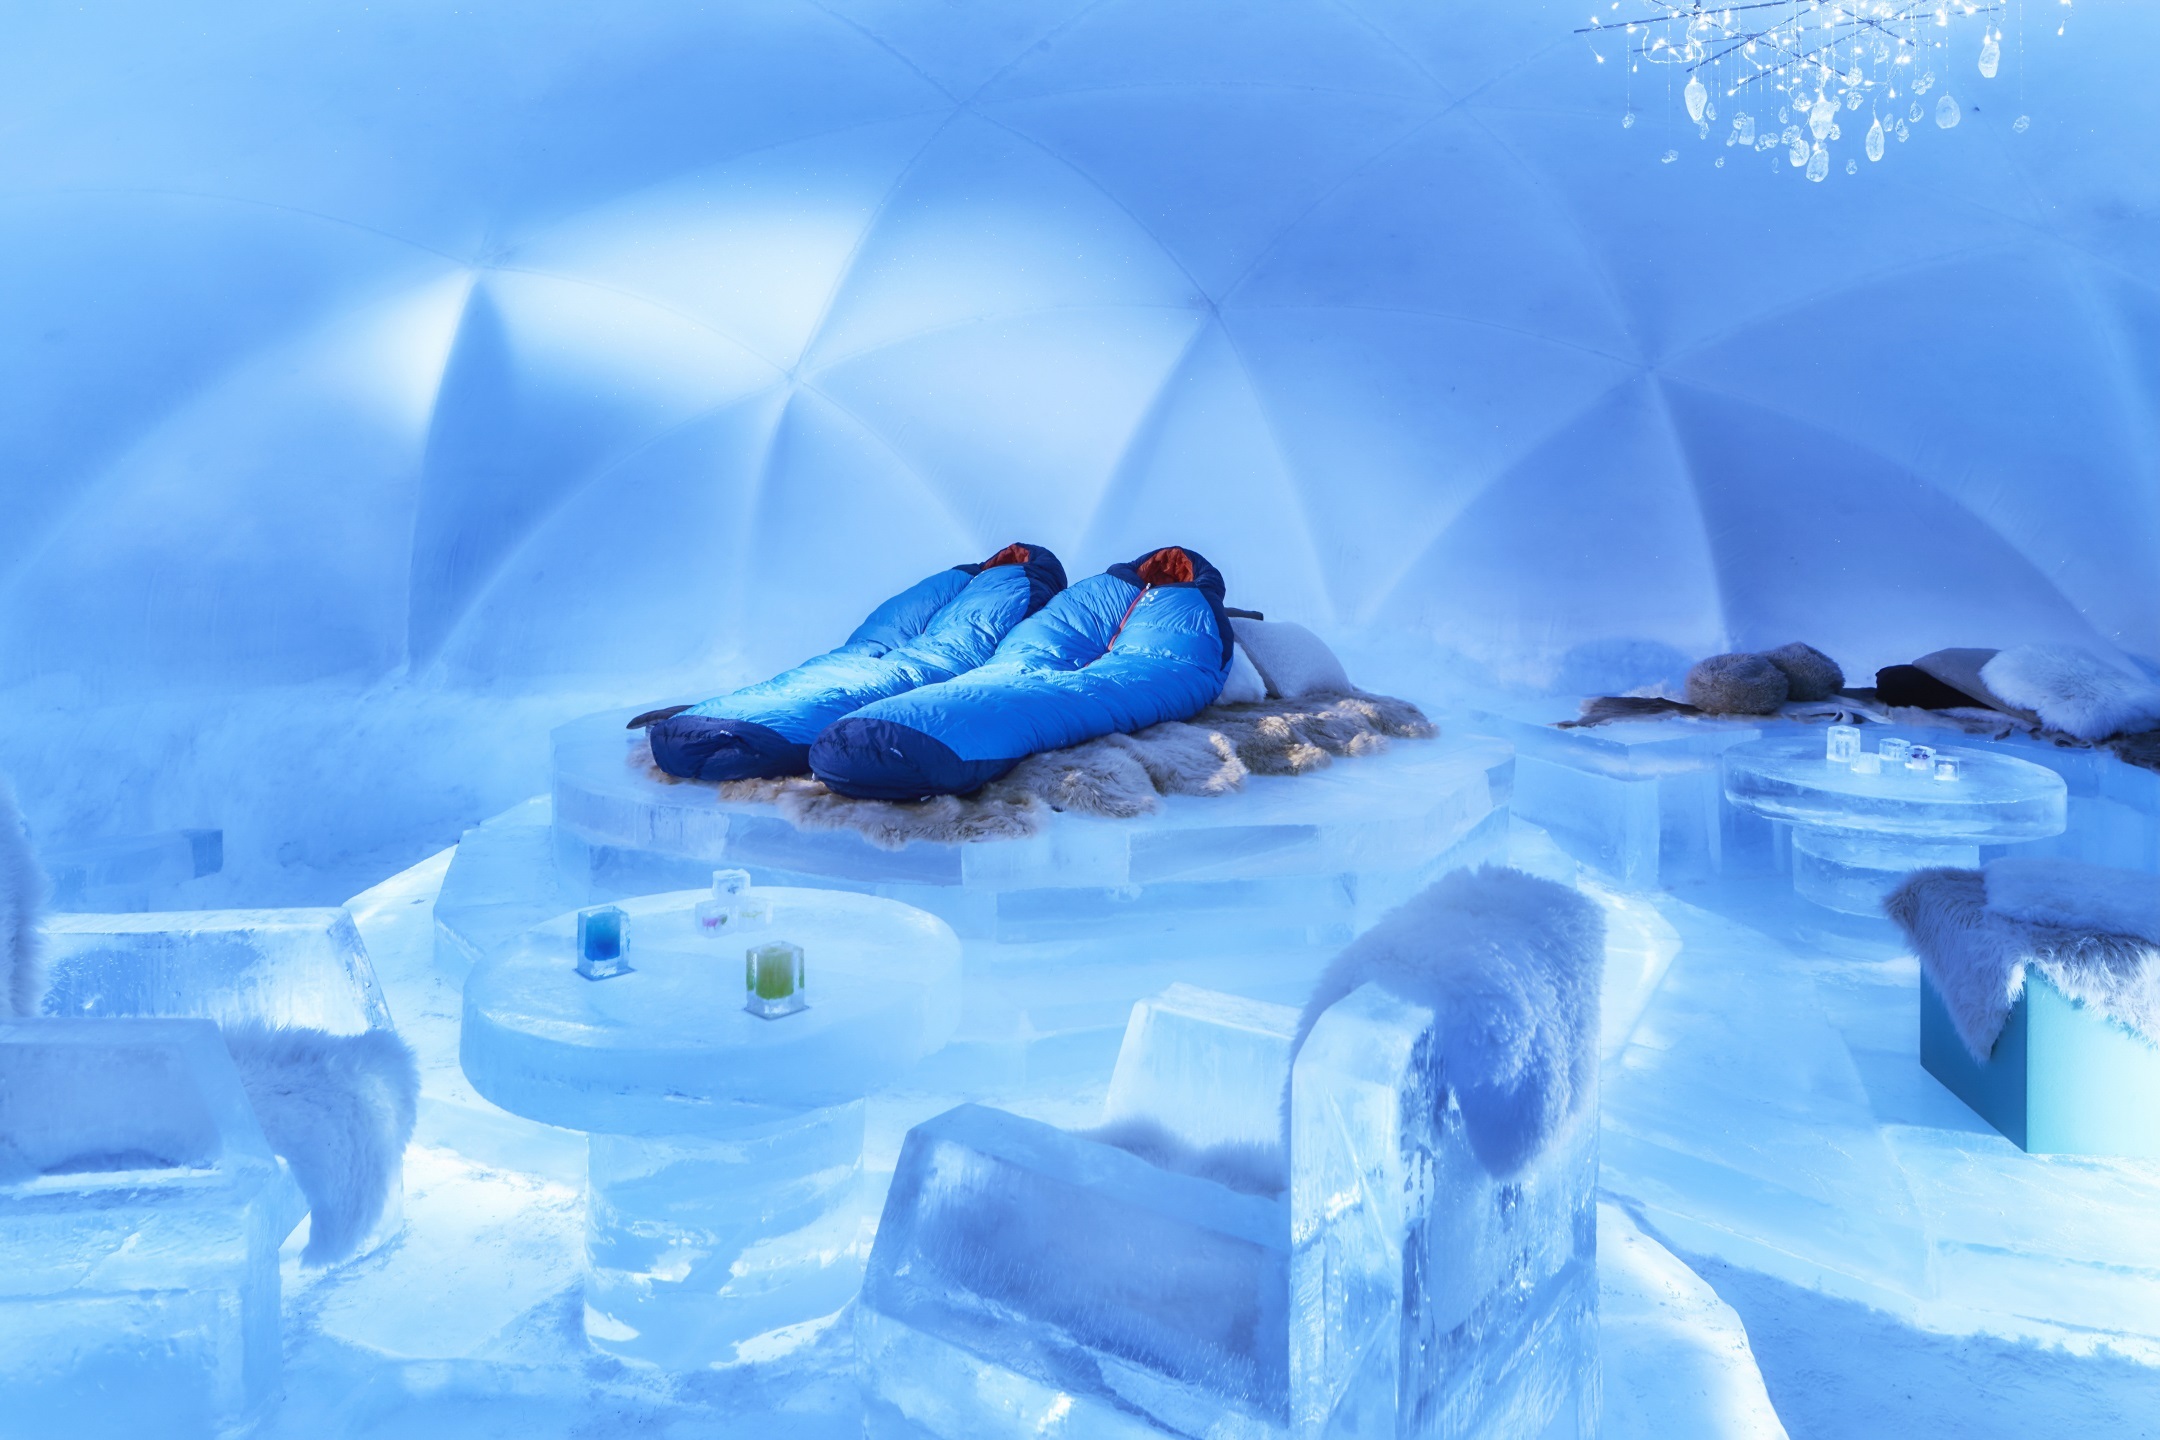 星野リゾート トマム全てが氷で造られた 氷のホテル で宿泊体験を実施 氷 の露天風呂 で新たに温泉を堪能期間 年1月18日 2月29日 星野リゾートのプレスリリース